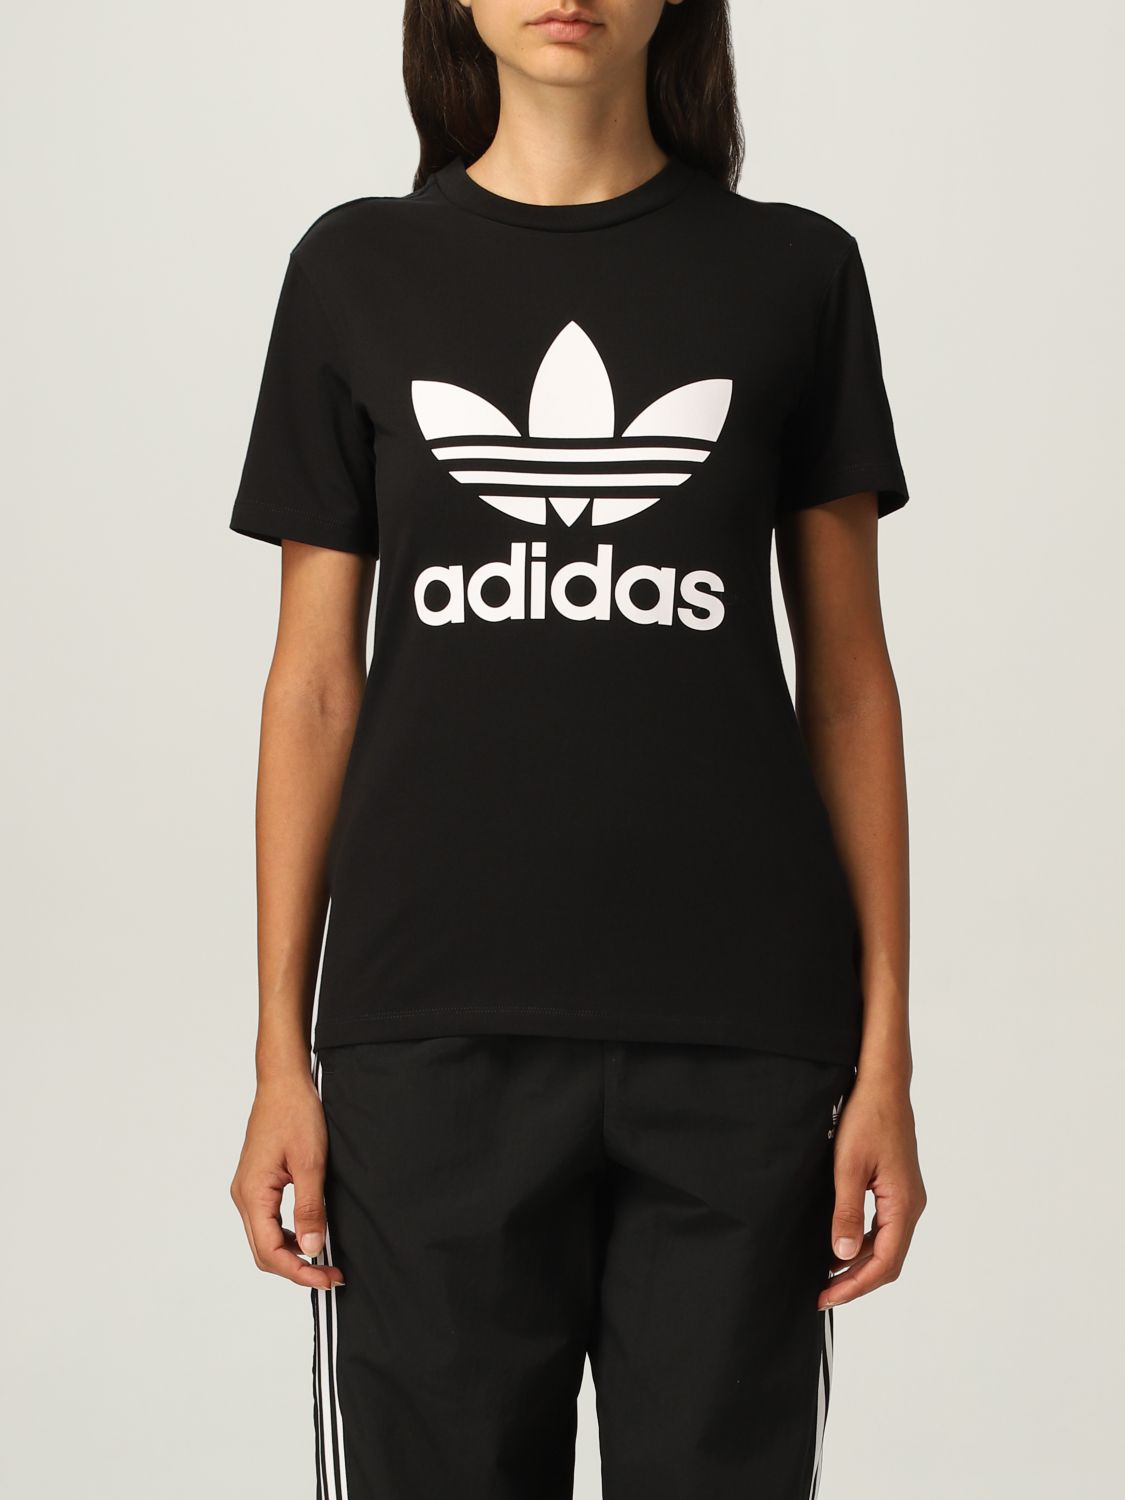 ADIDAS ORIGINALS: t-shirt for women - Black | Adidas Originals t-shirt ...